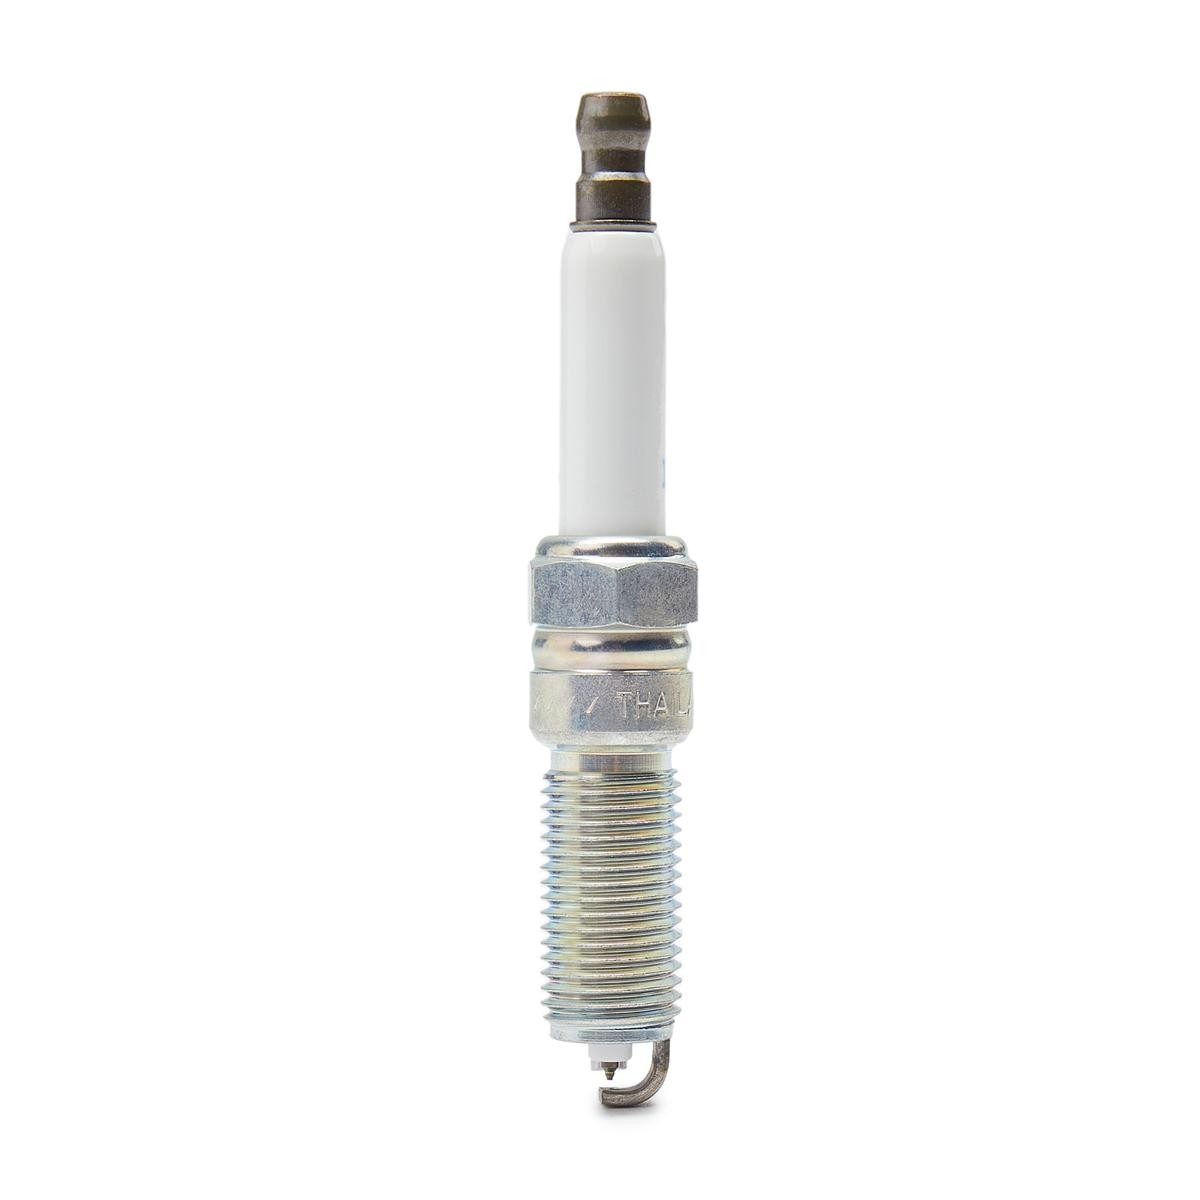 Spark Plug NGK 91970 - Ignition system spare parts order